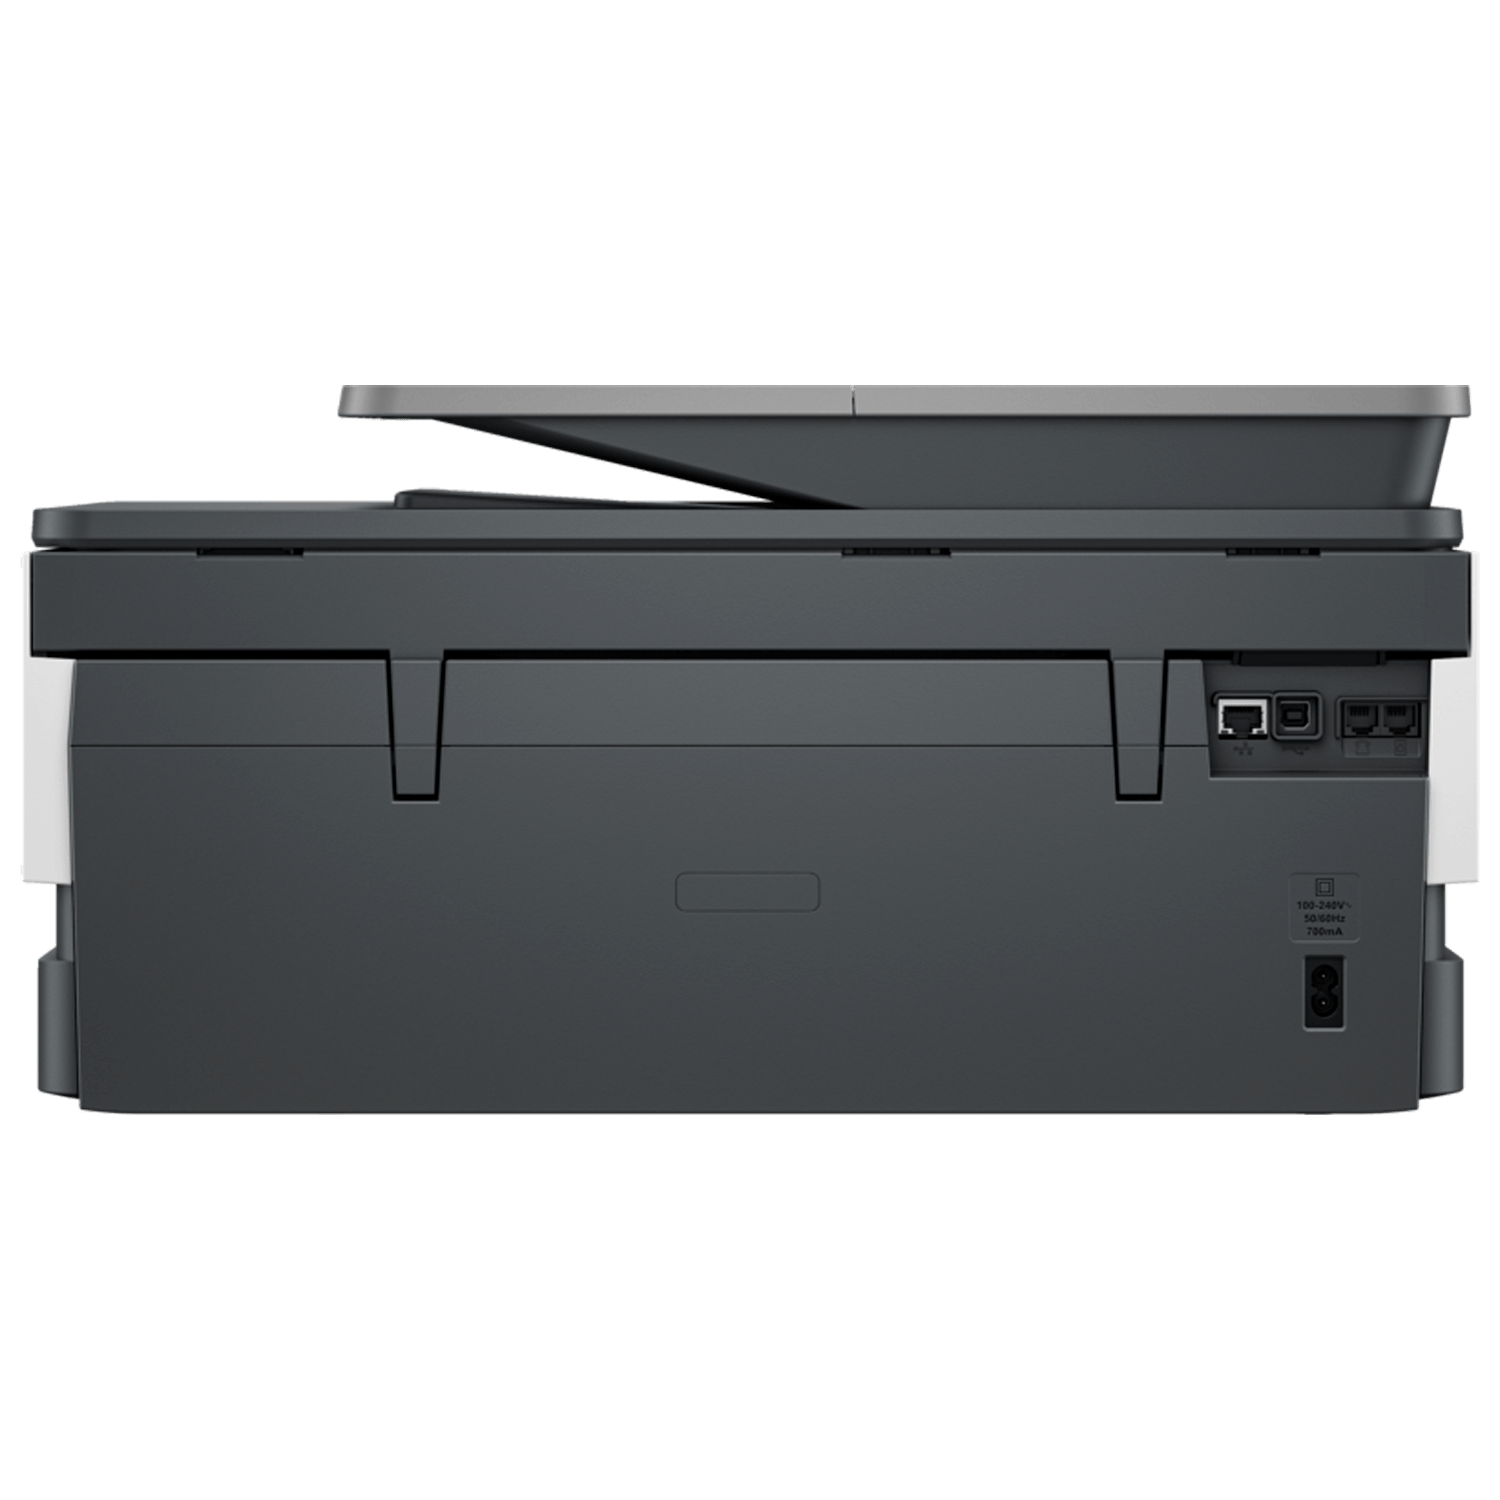 מדפסת משולבת צבעונית אלחוטית HP OfficeJet Pro 8133 AiO - צבע לבן שלוש שנות אחריות ע